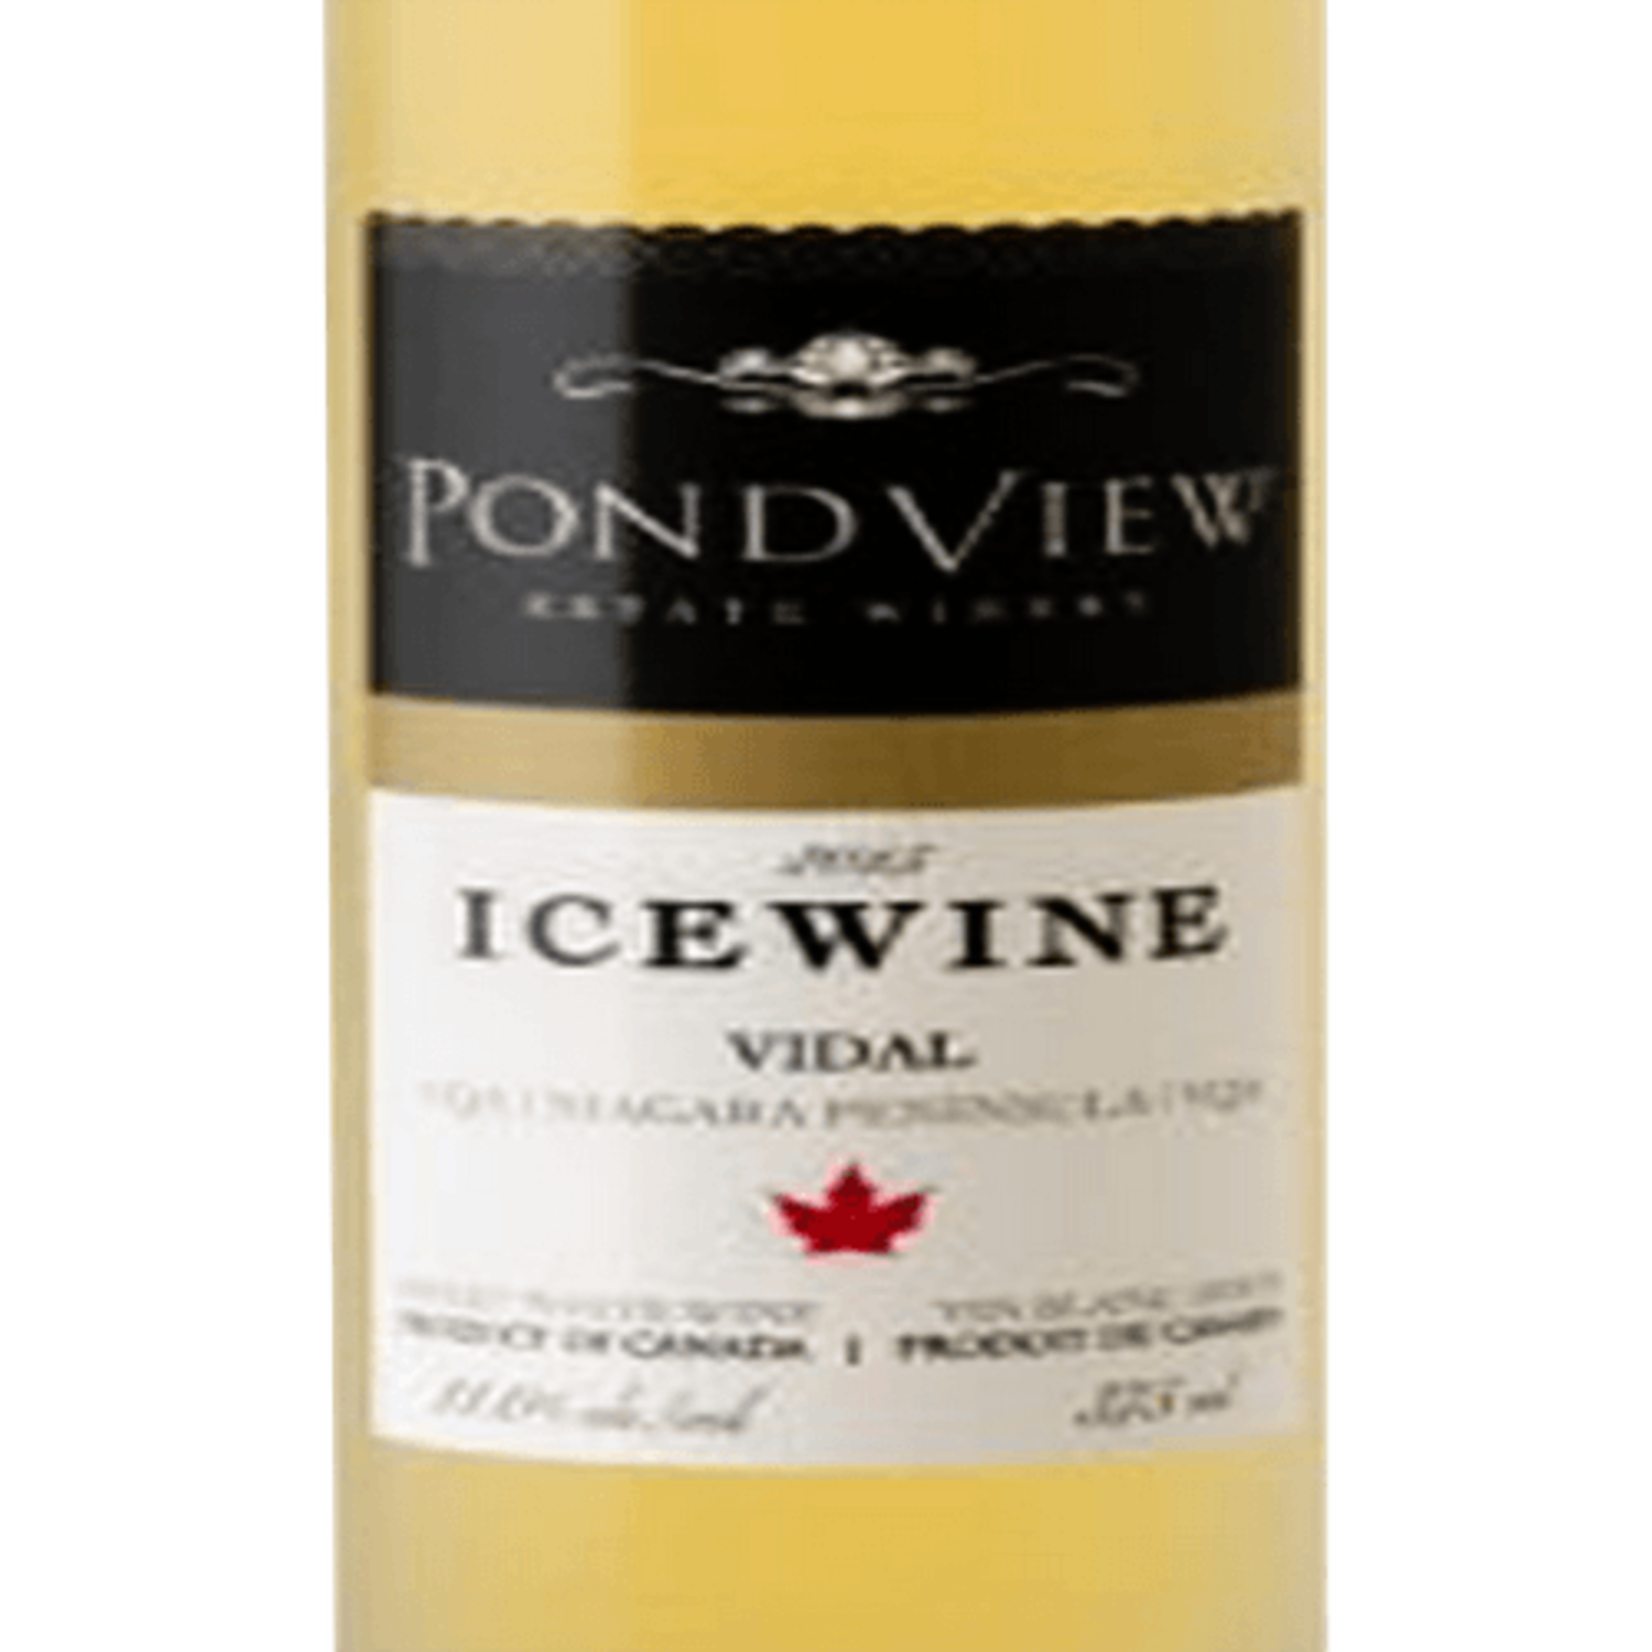 Pondview PondView Estate Winery, Icewine "Vidal" 2014, Niagara Peninsula, Ontario, Canada